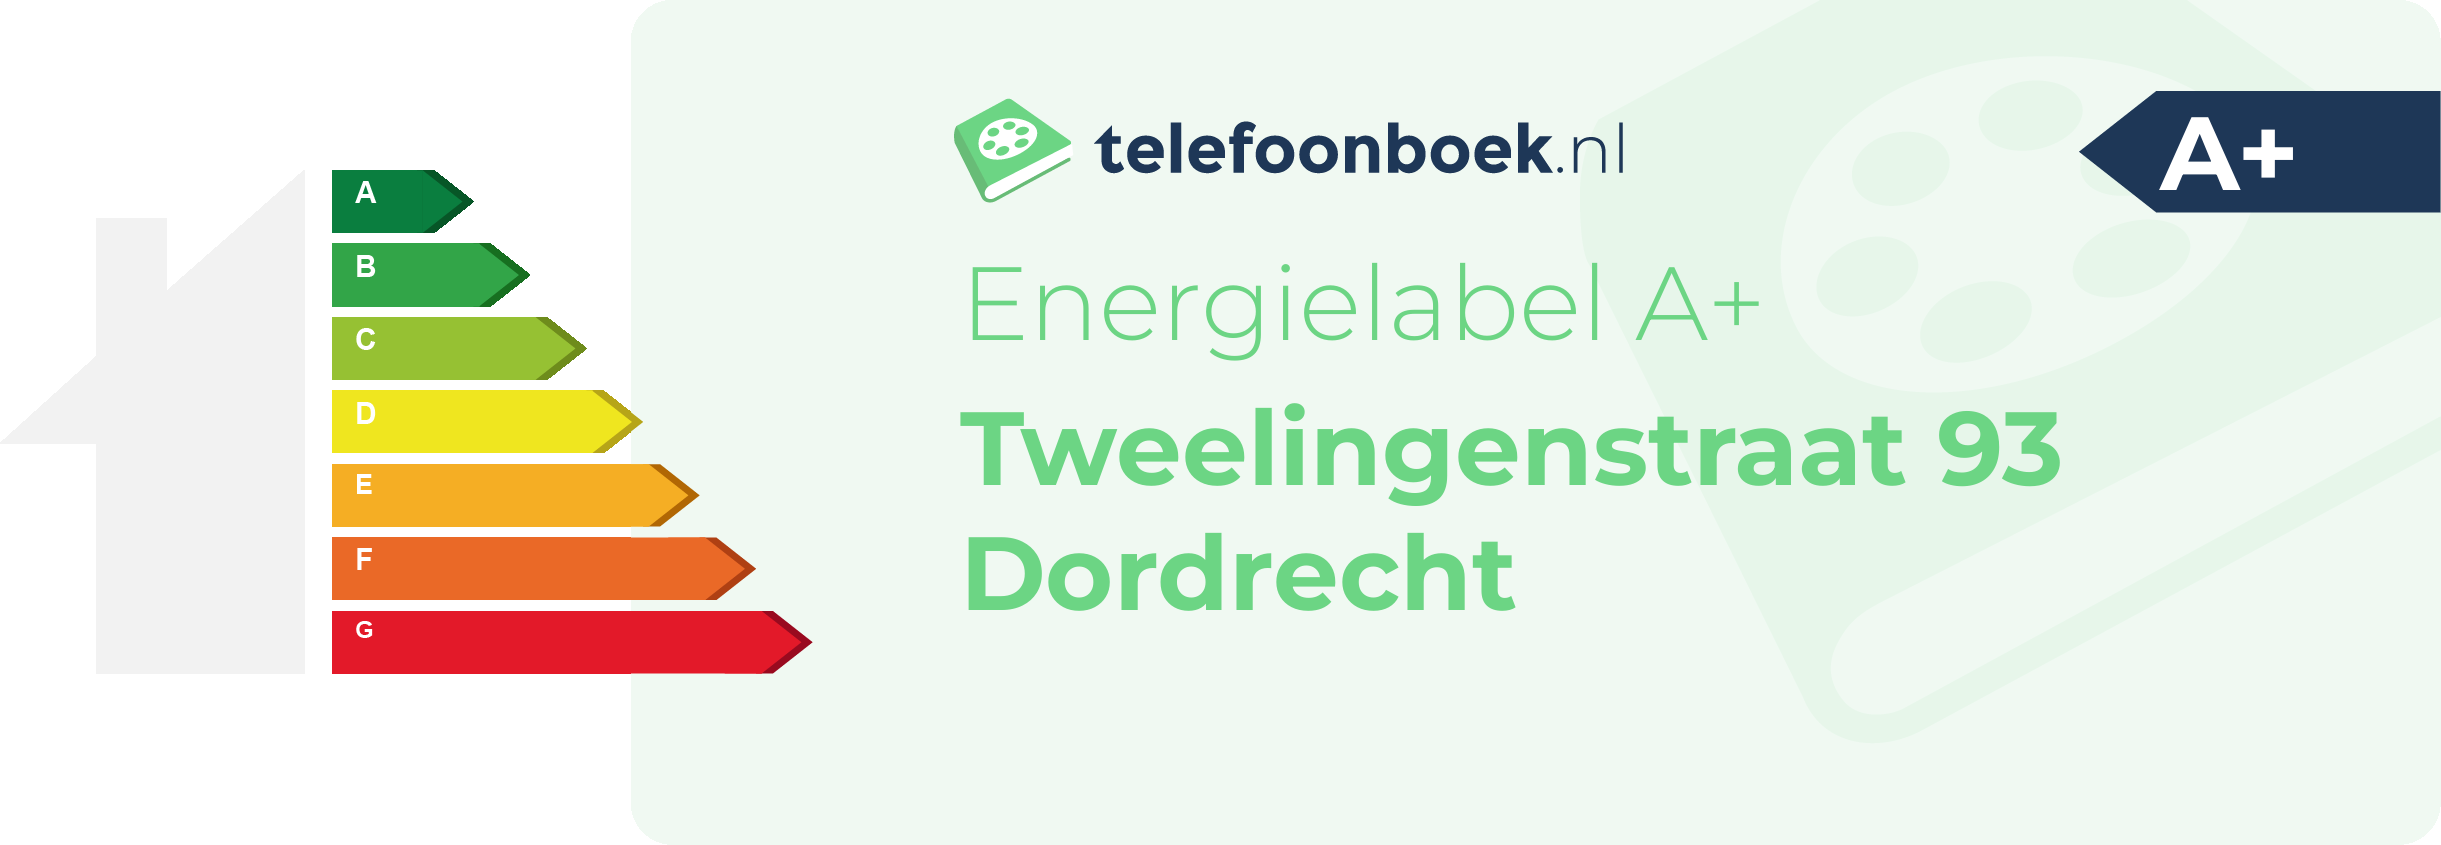 Energielabel Tweelingenstraat 93 Dordrecht